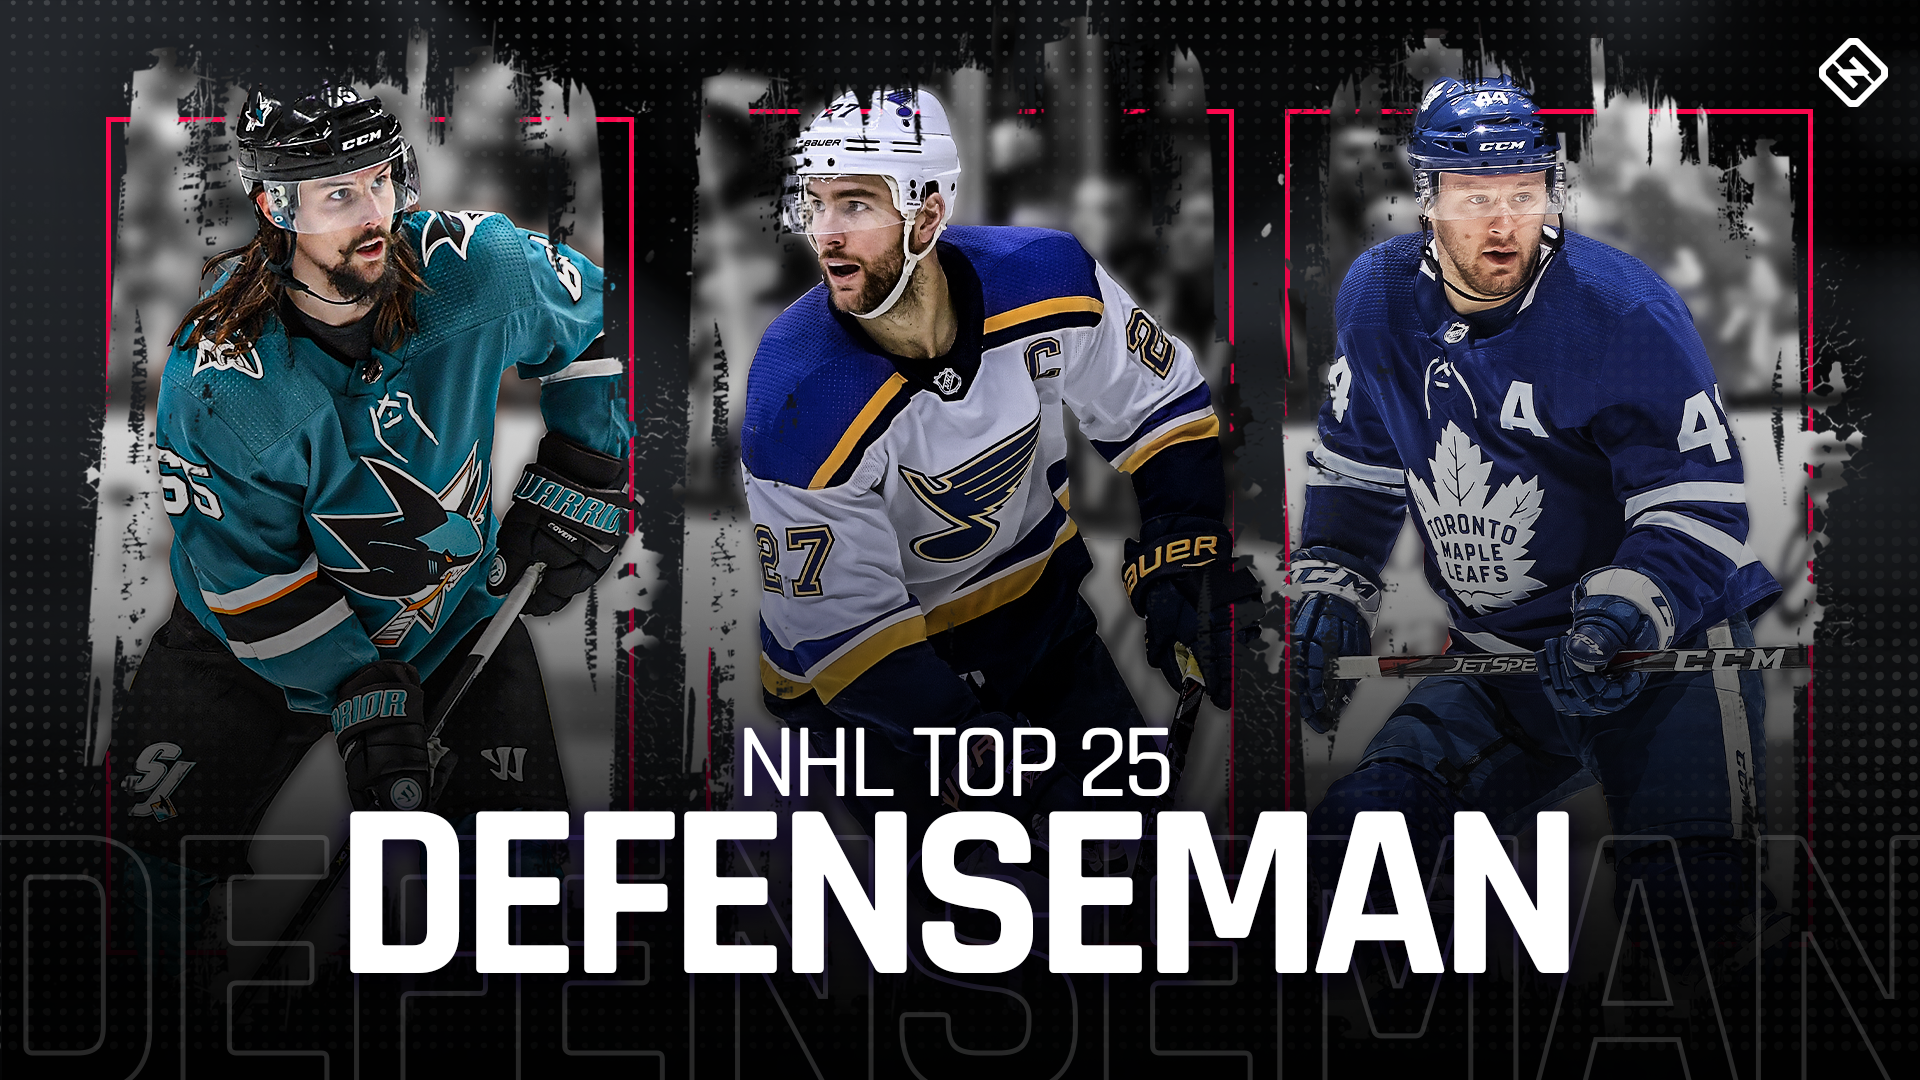 Top 25 NHL defensemen in 2019-20 